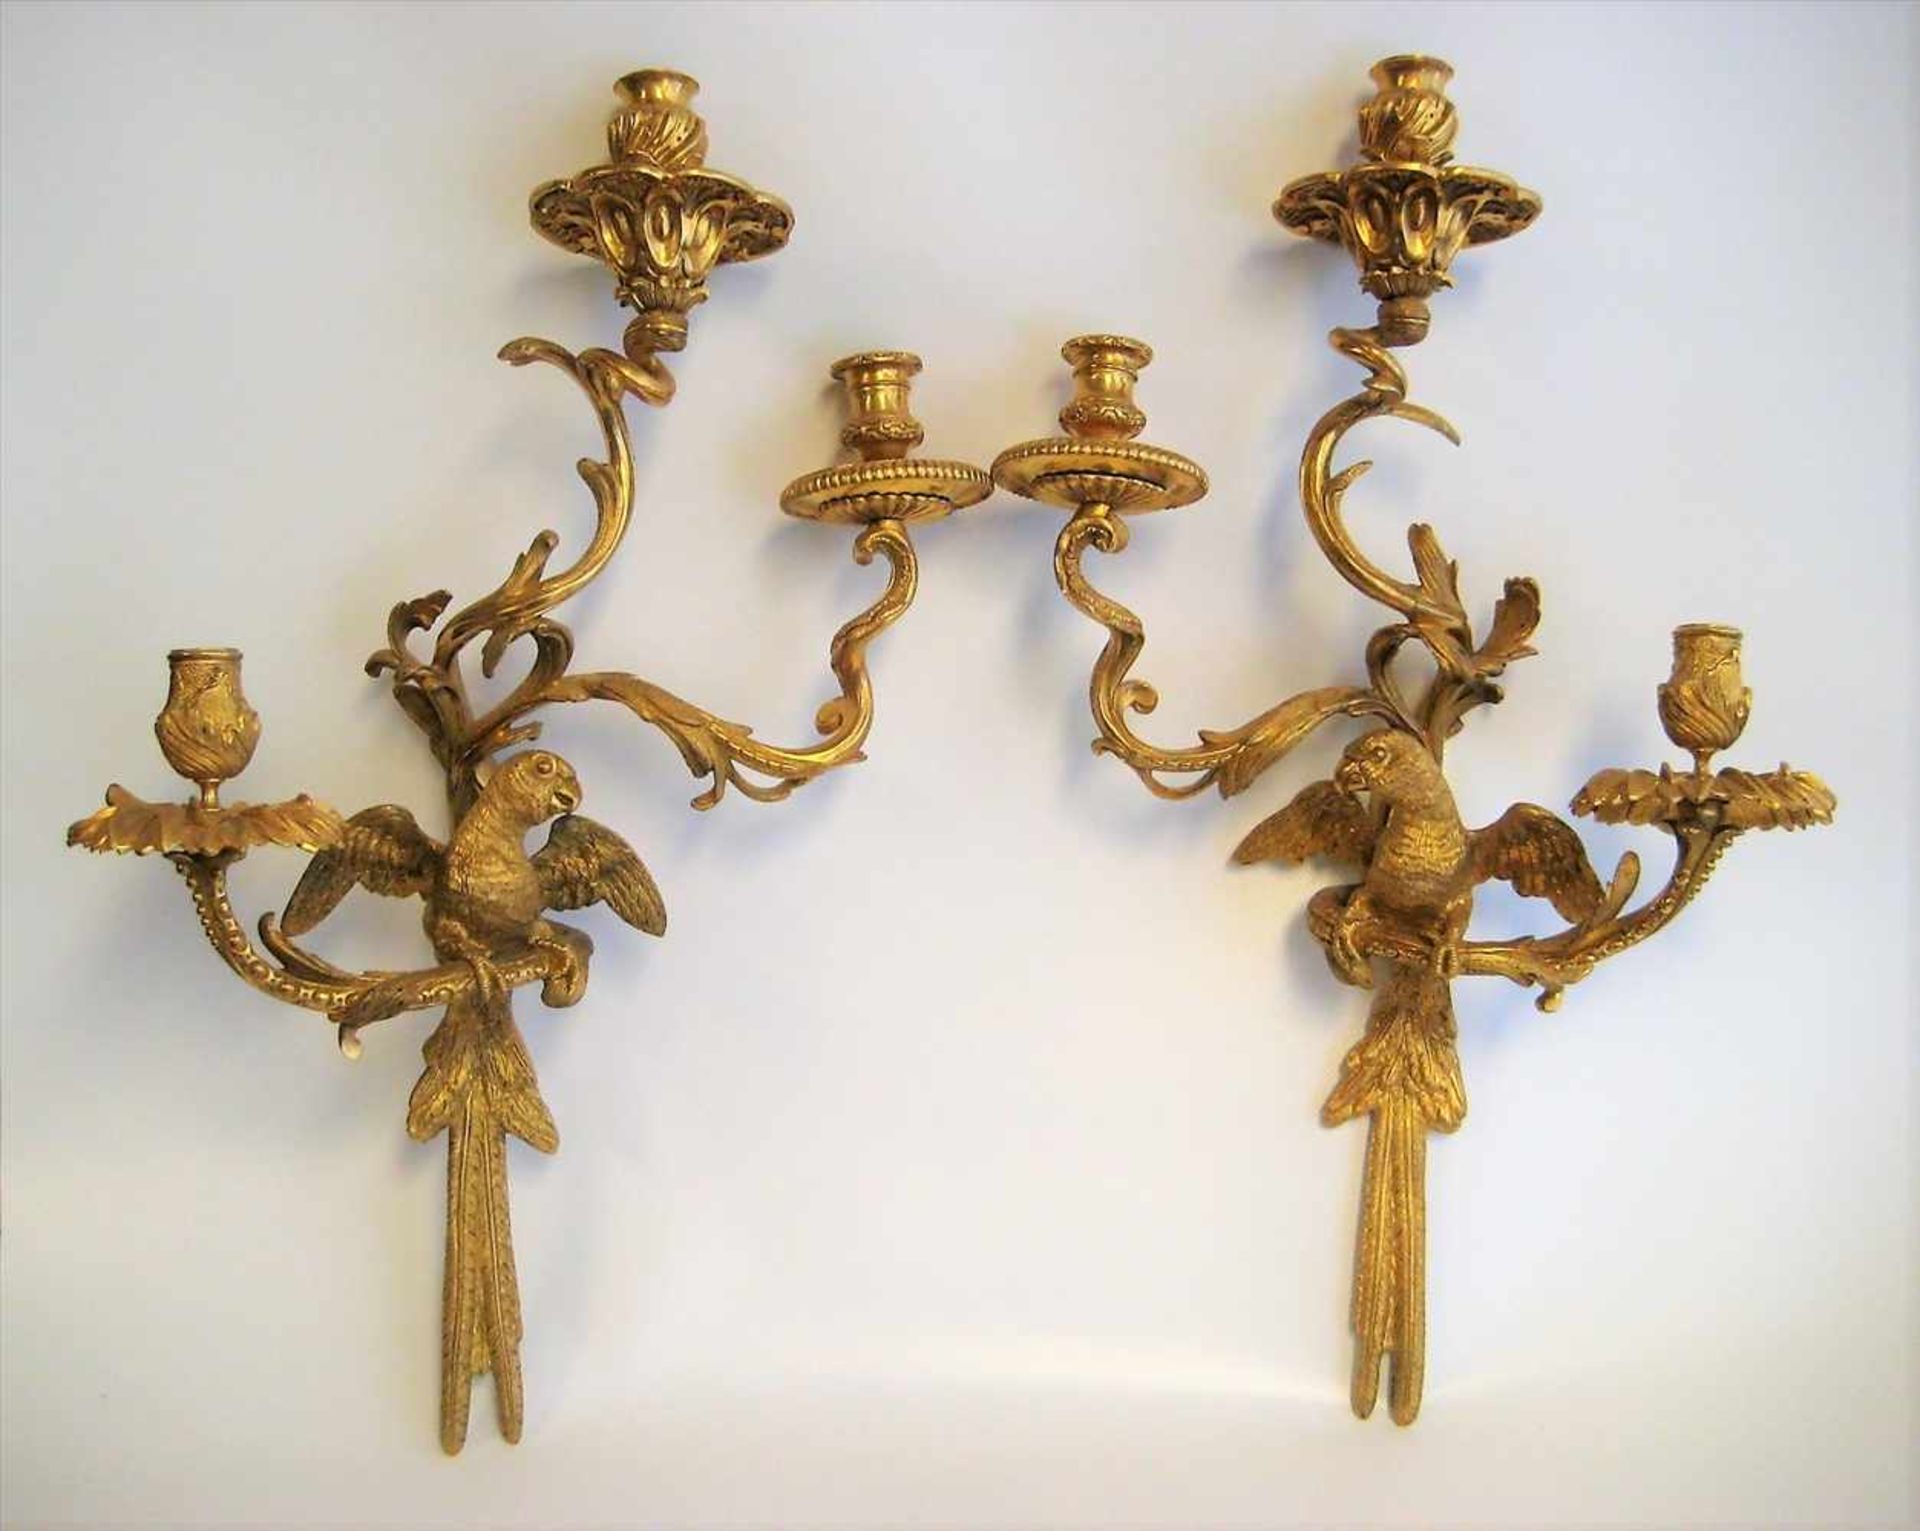 2 Wandkerzenleuchter, Frankreich, um 1800, getragen durch Papageien, Bronze mit Feuervergoldung, - Bild 3 aus 4